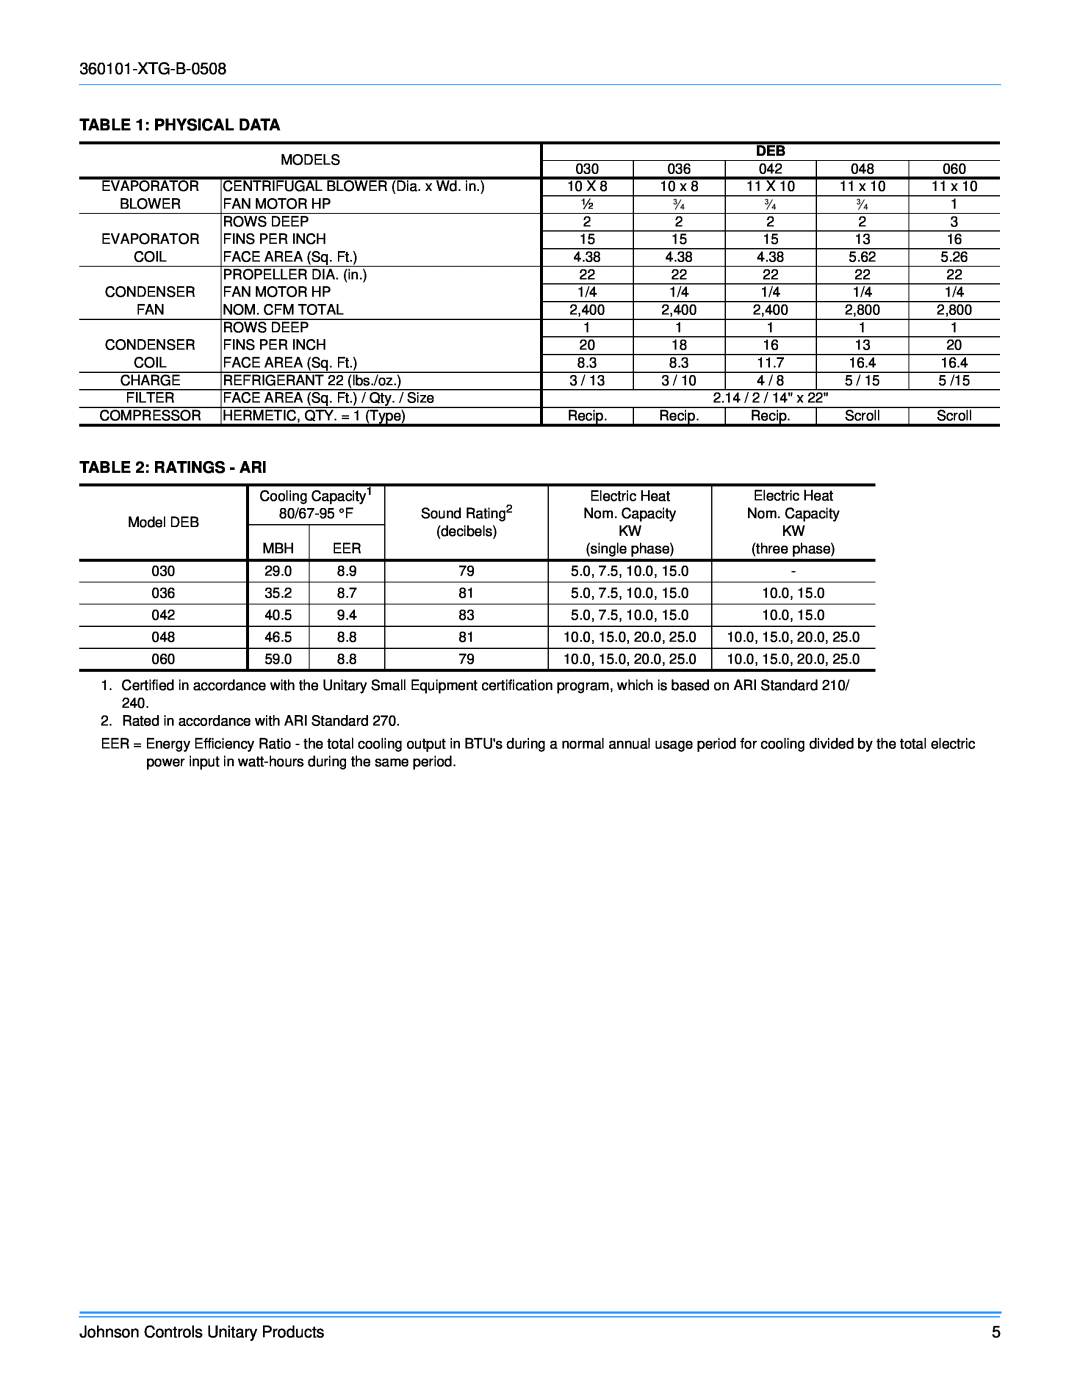 York D2EB030 manual Physical Data, Ratings - Ari 